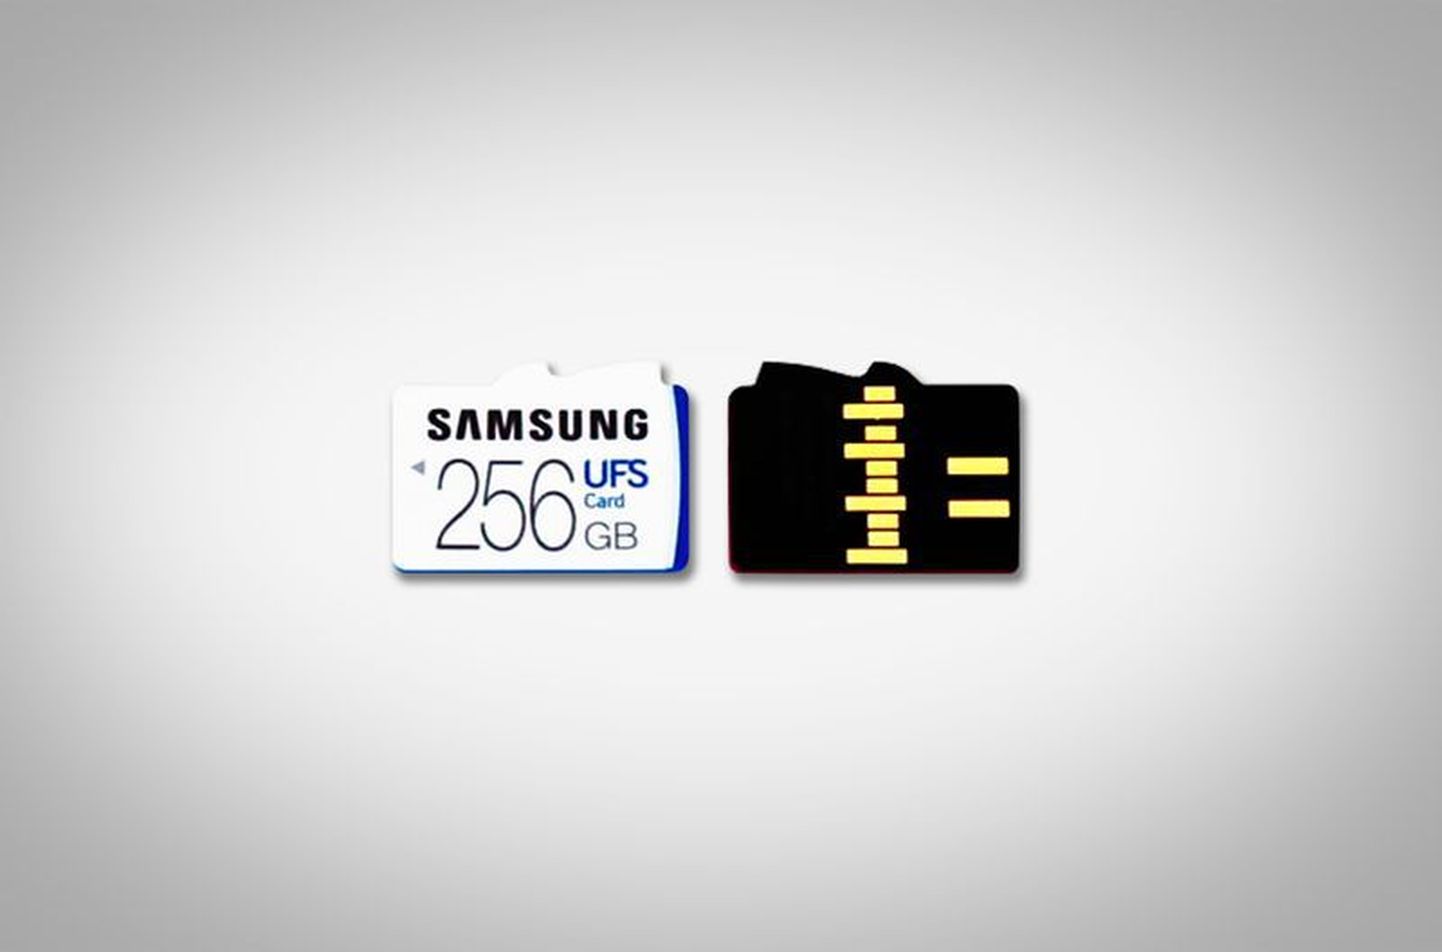 Samsungi uus UFS-mälukaart